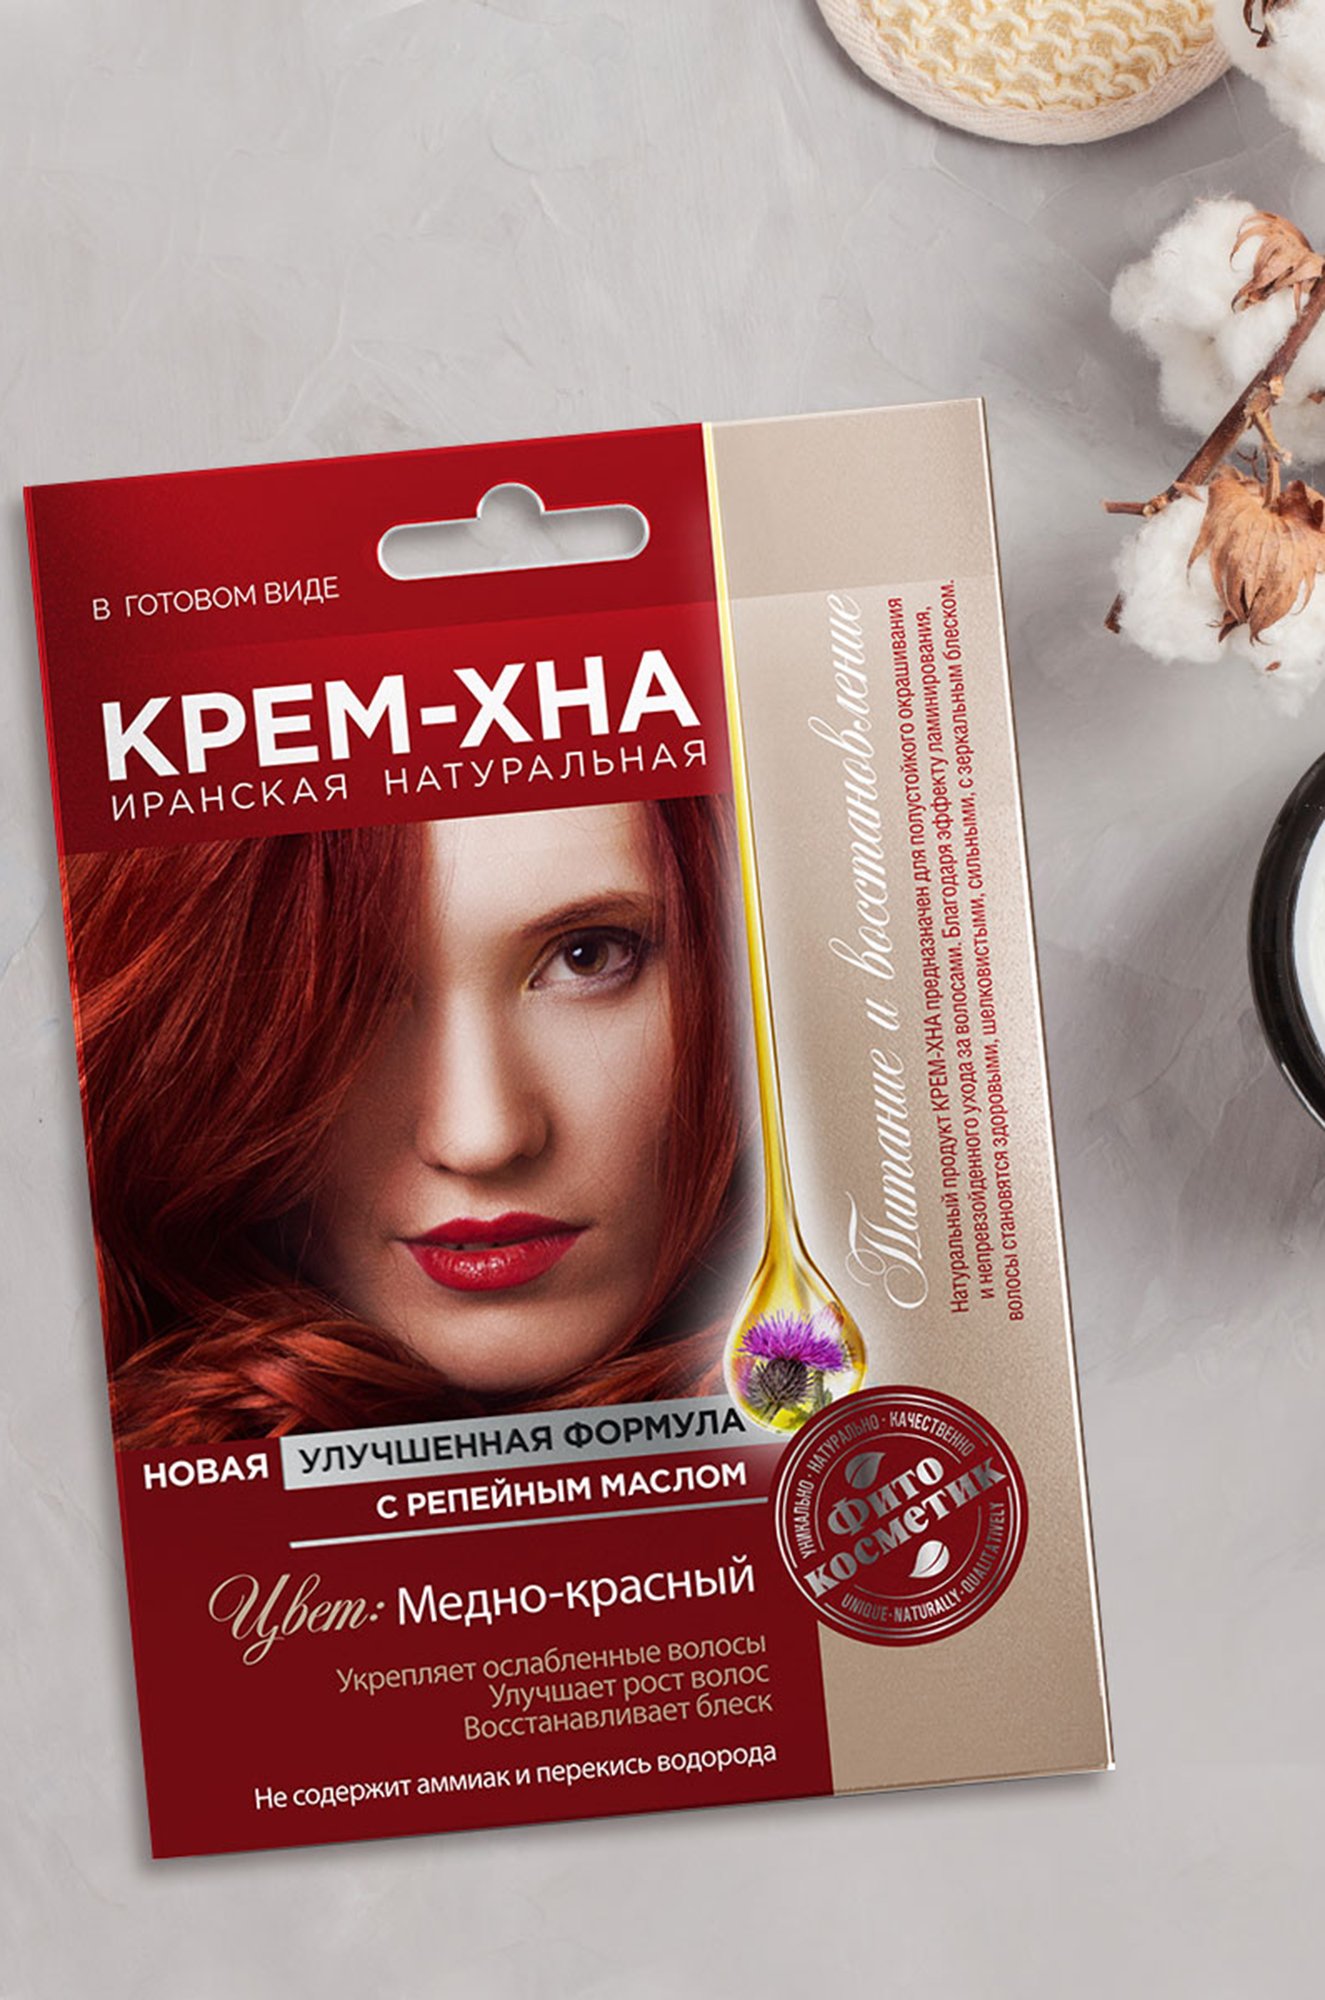 Крем-Хна в готовом виде Медно-красный с репейным маслом 50 мл Fito косметик